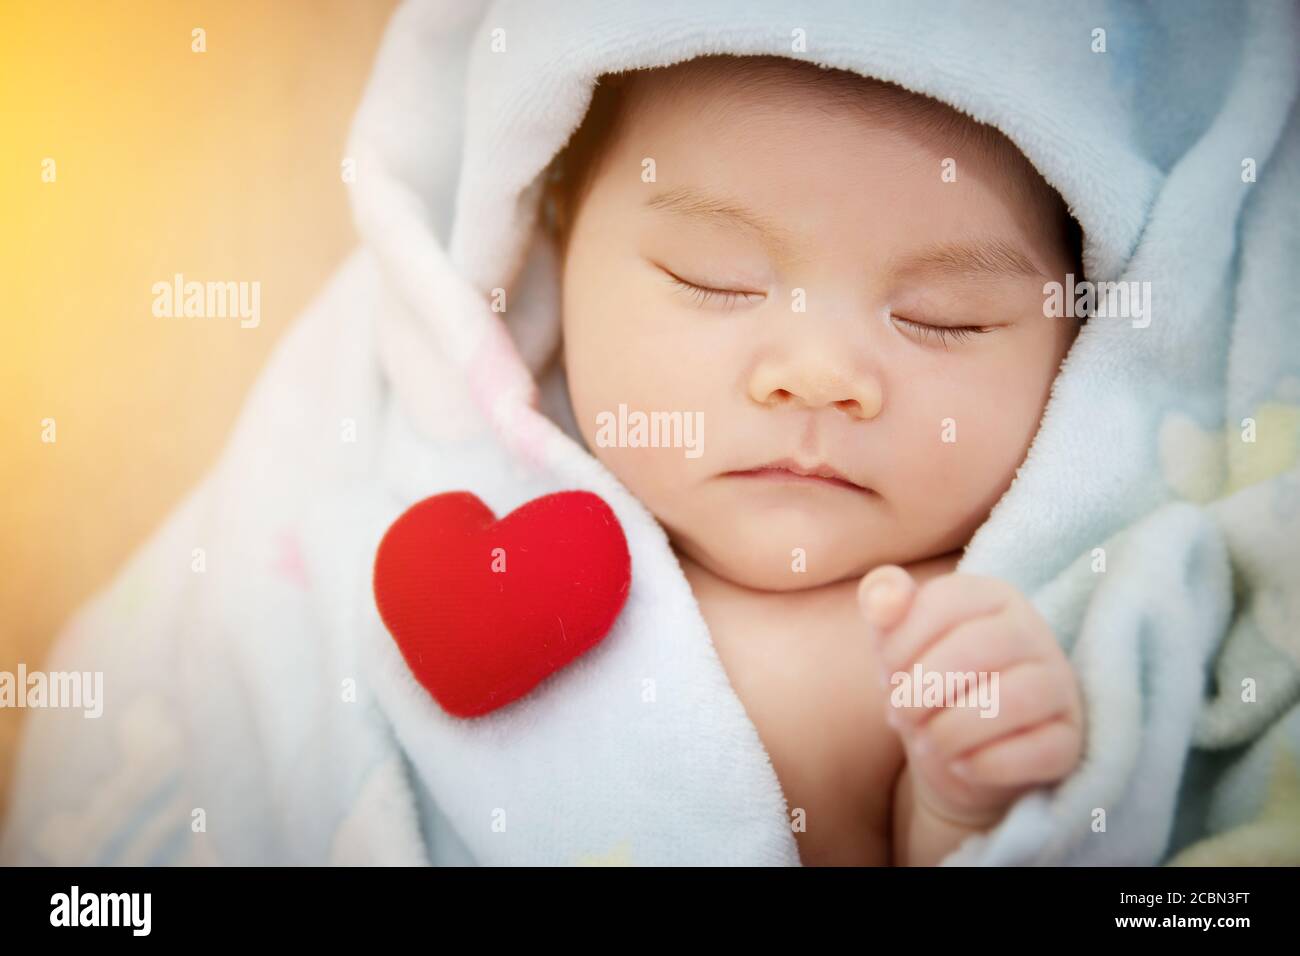 Famille amour concept de relation : coeur rouge mis sur le sommeil mignon bébé asiatique. Adorable nouveau-né asiatique modèle de femme dans sa première année Banque D'Images